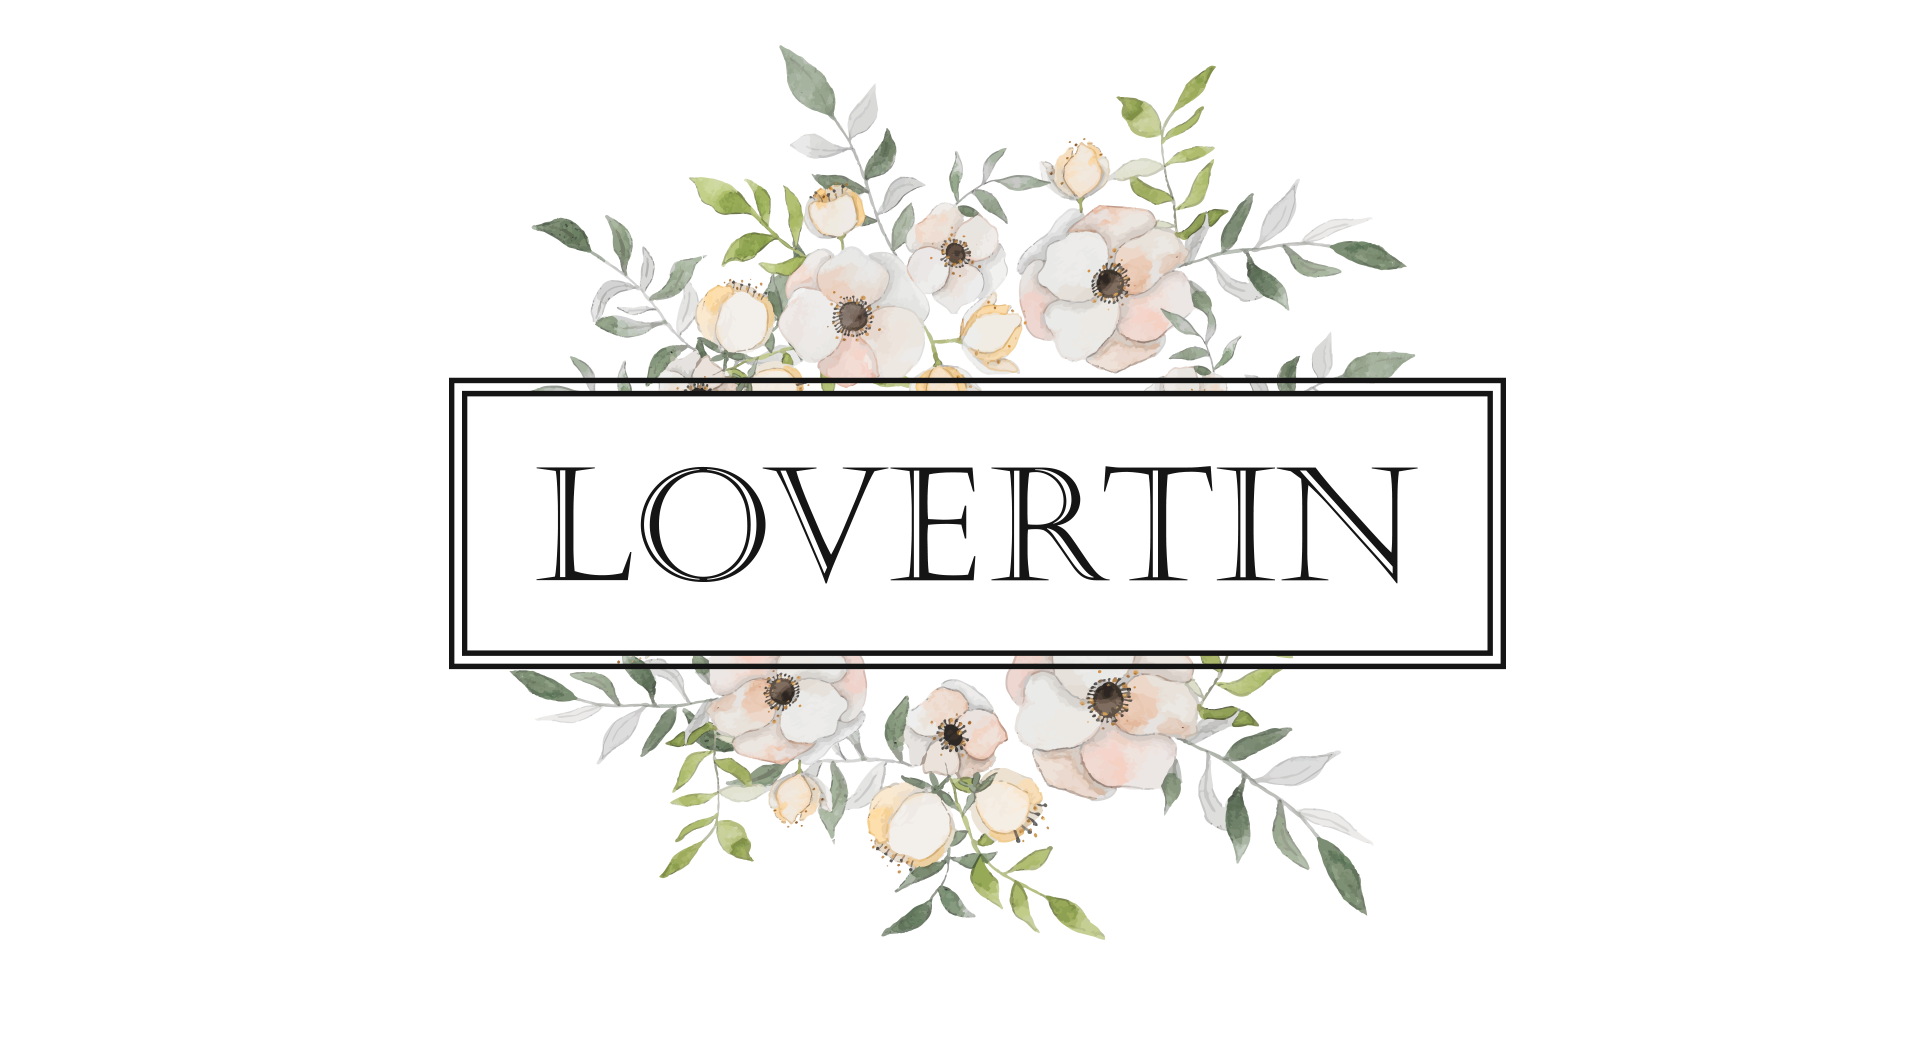 Lovertin